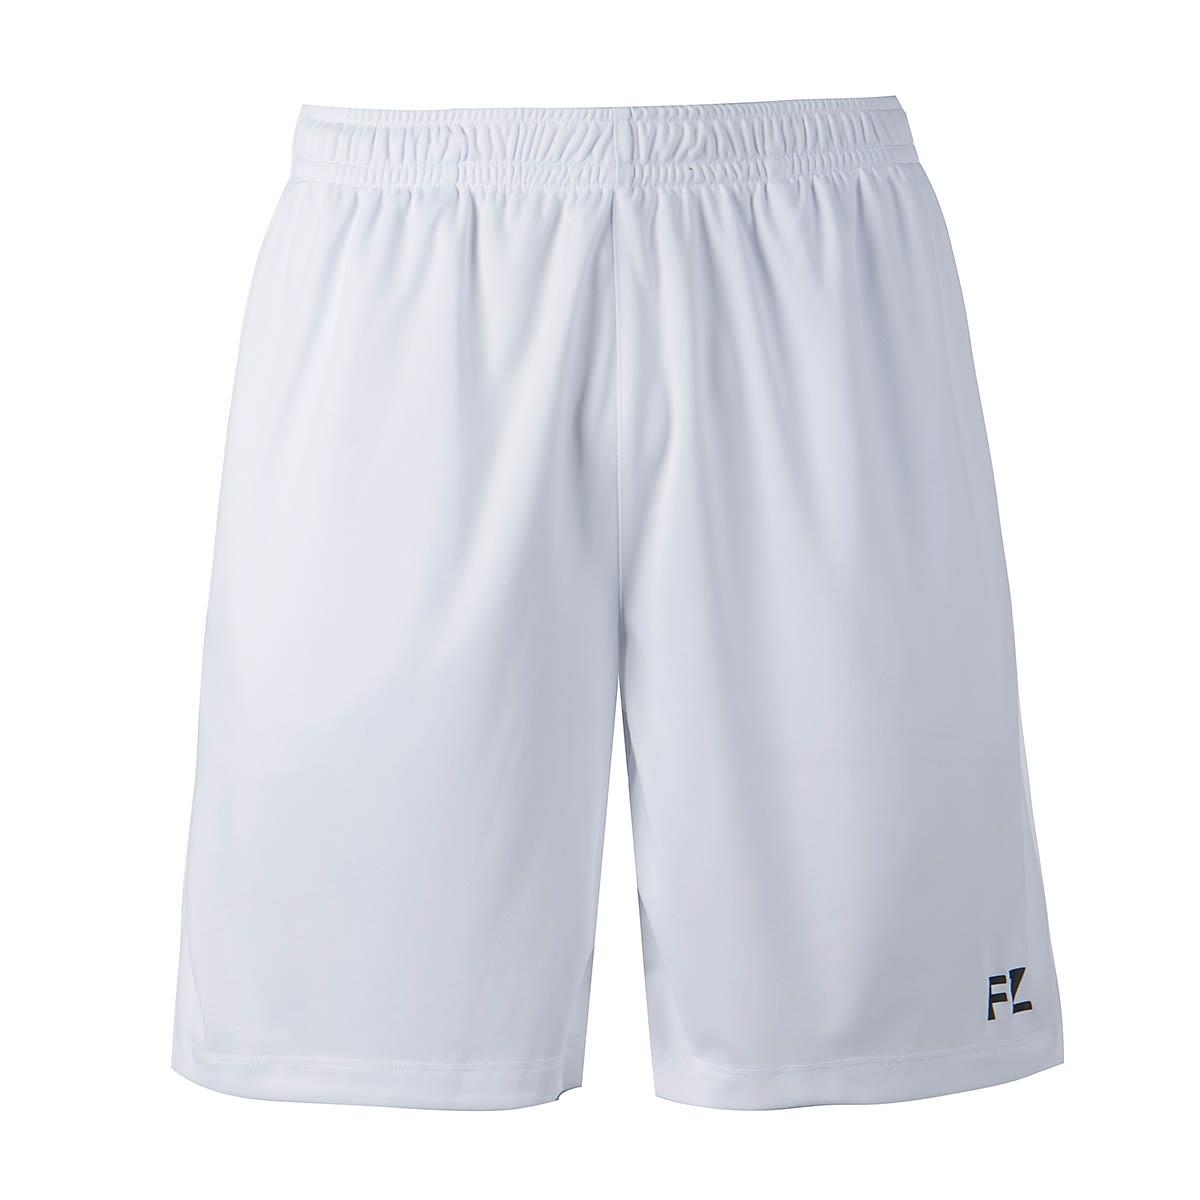 FZ Forza Landos Mens Badminton Shorts - White